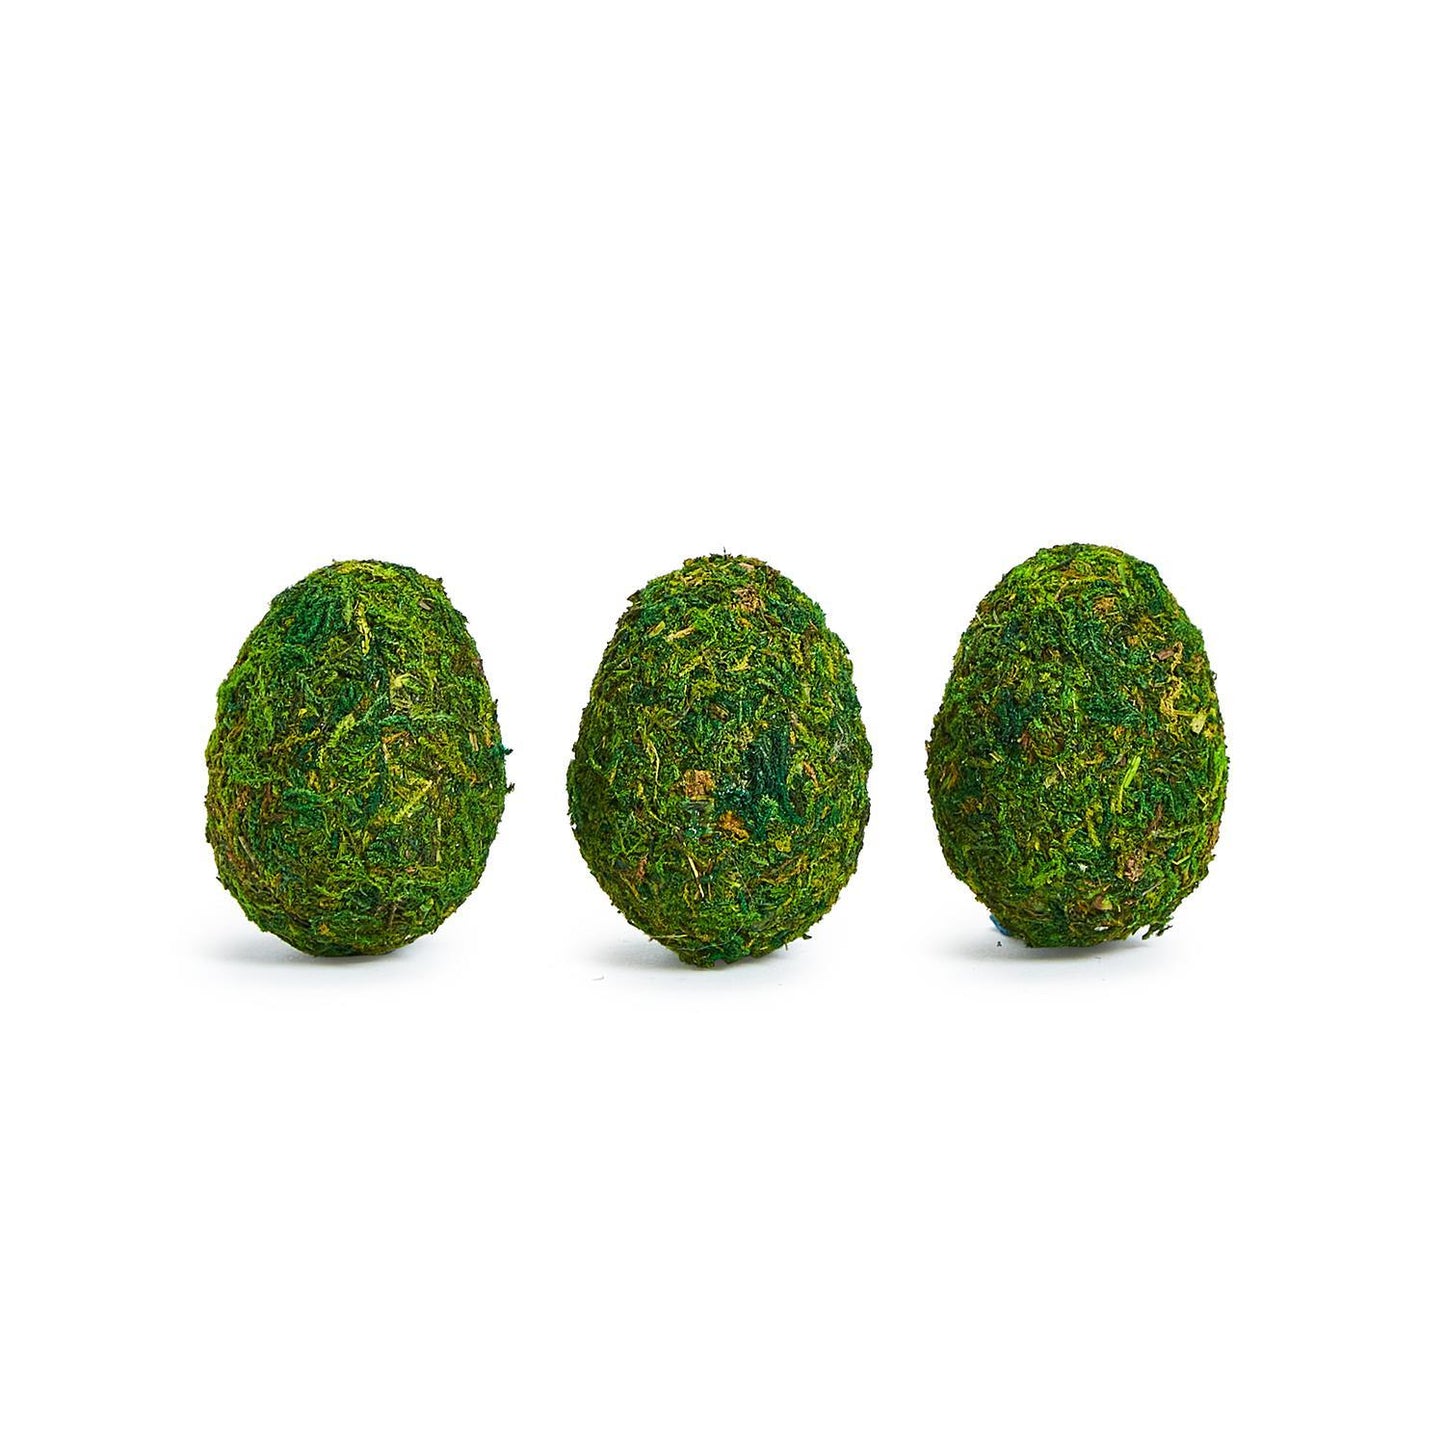 Moss Eggs